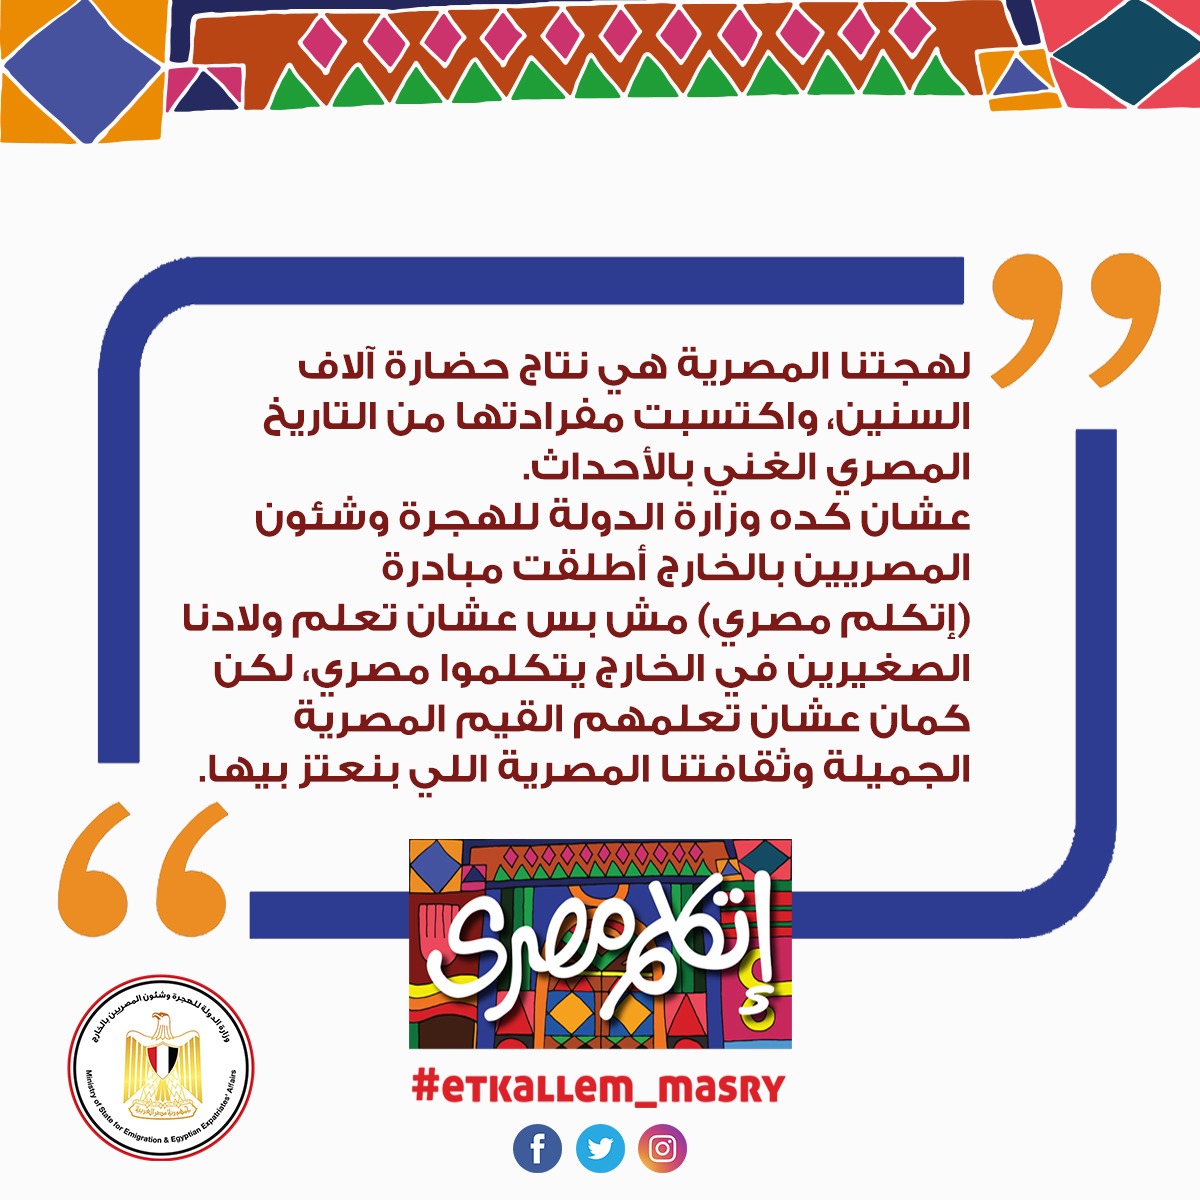 وزارة الهجرة تطلق الصفحة الخاصة بمبادرة اتكلم مصري عبر “فيسبوك”وسيتم نشر كافة الدروس الخاصة بها عليها